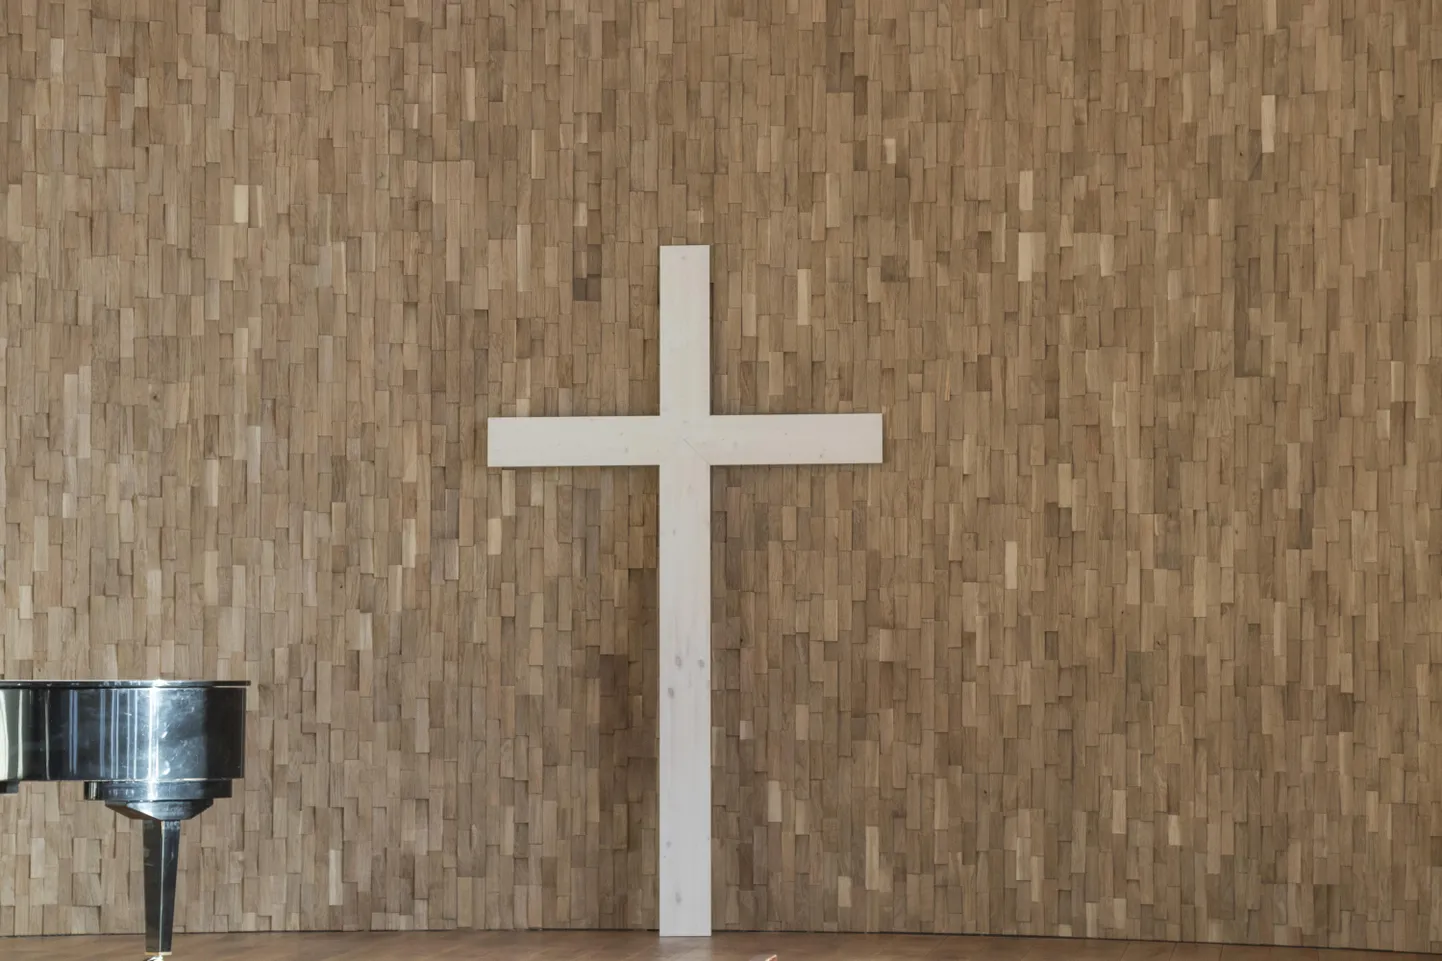 Kiriku seinal on uus puitrist.